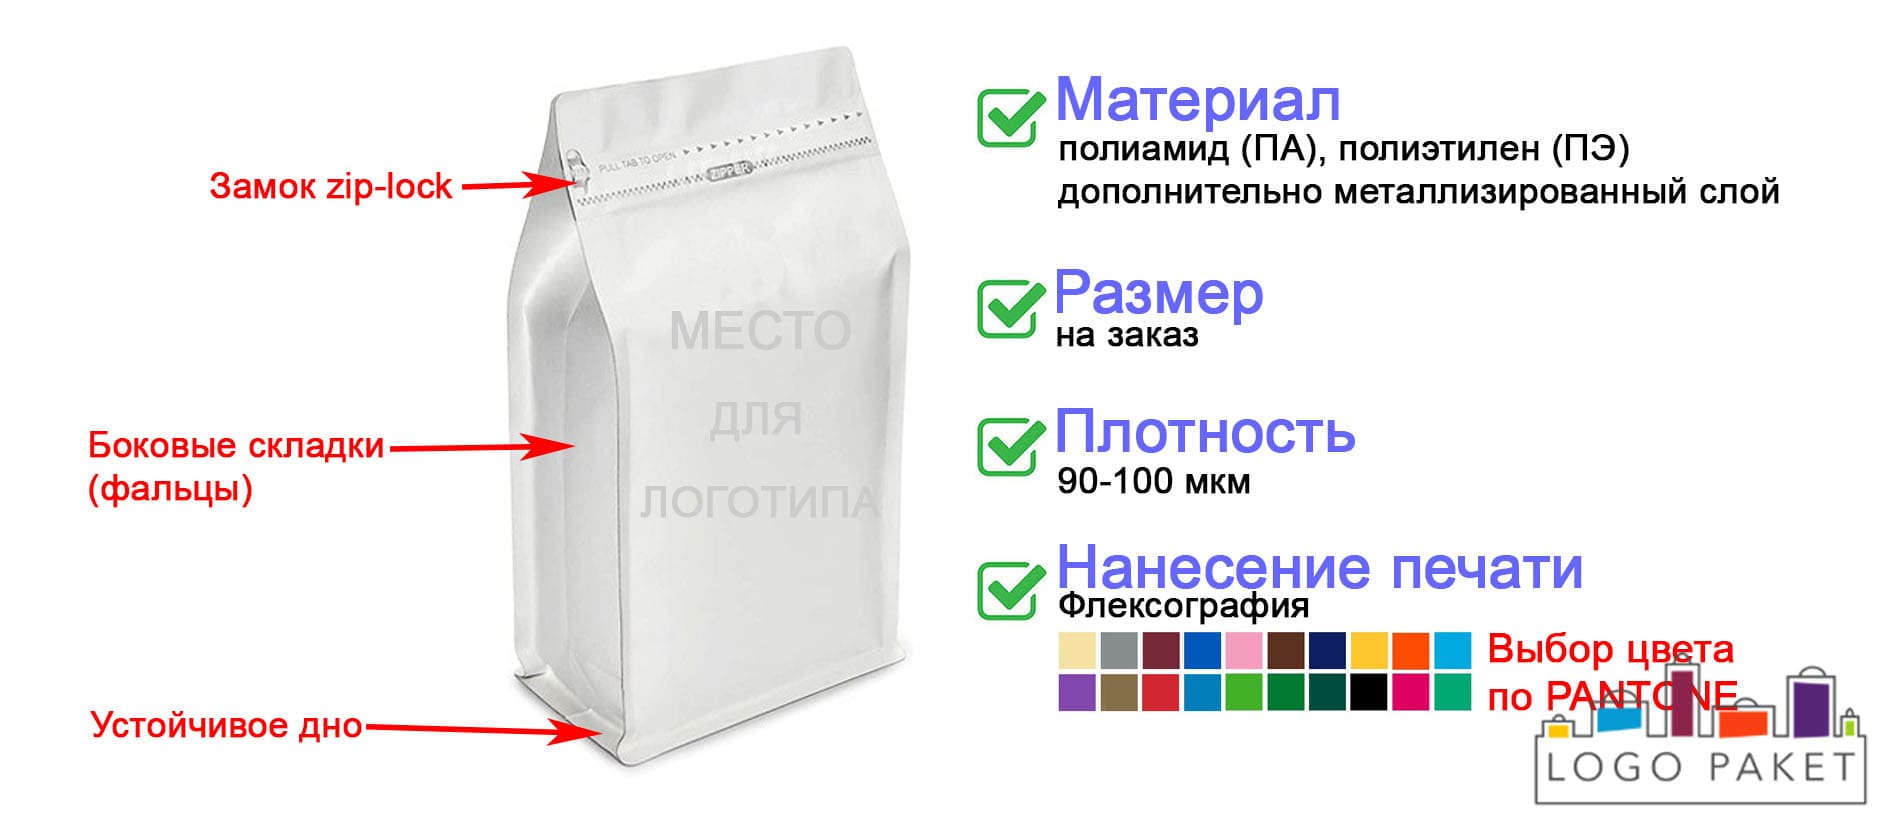 Вакуумный пакет с боковыми фальцами инфографика